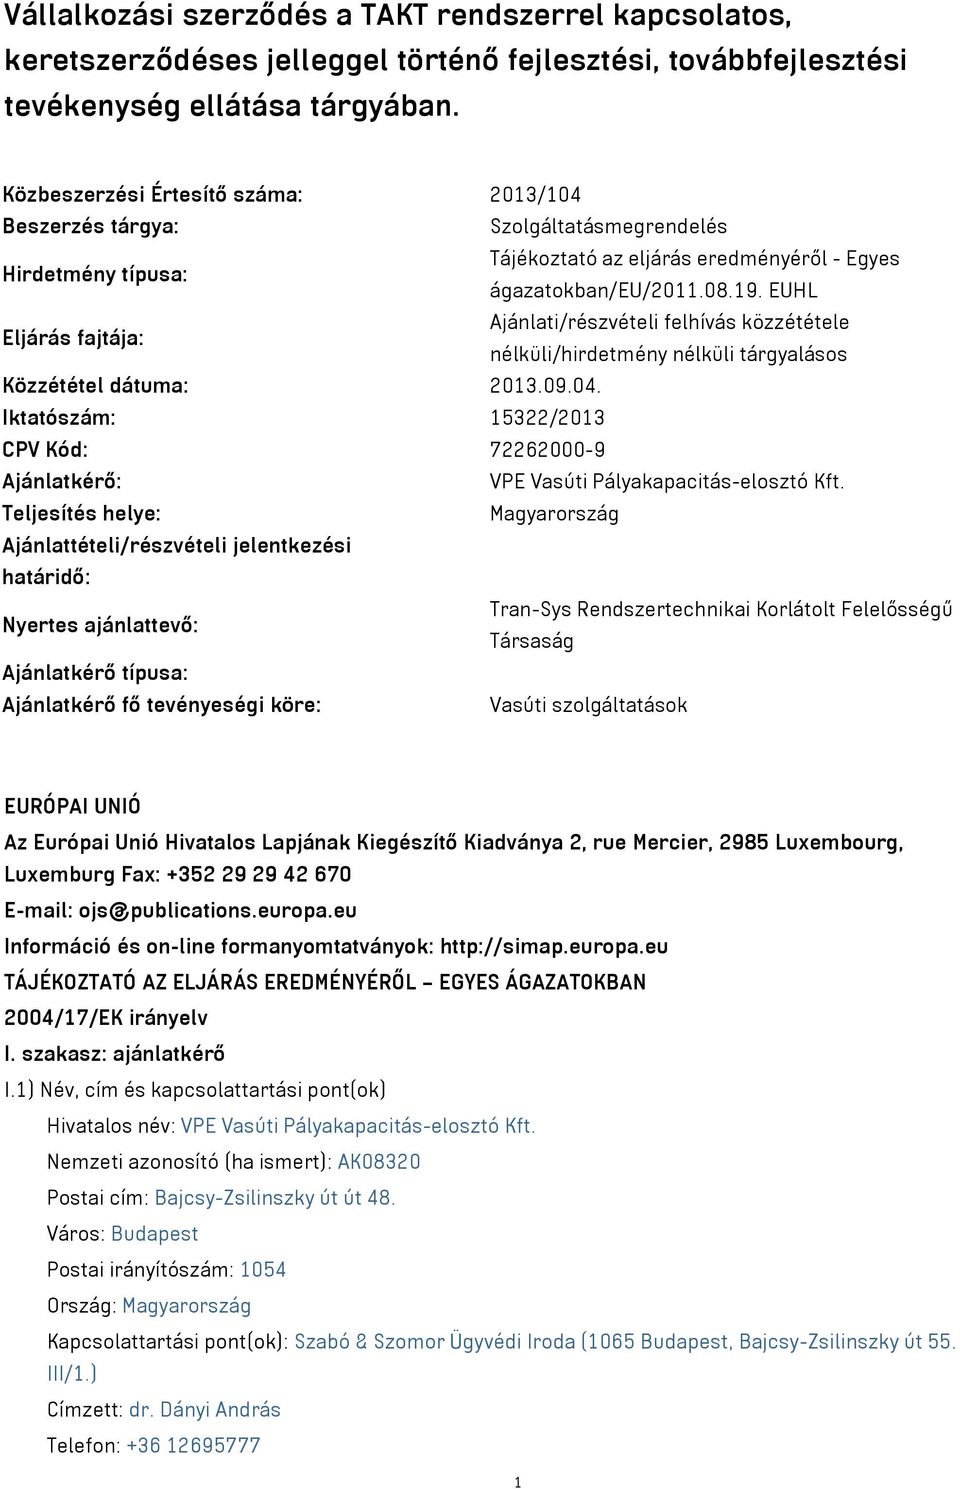 EUHL Eljárás fajtája: Ajánlati/részvételi felhívás közzététele nélküli/hirdetmény nélküli tárgyalásos Közzététel dátuma: 2013.09.04.